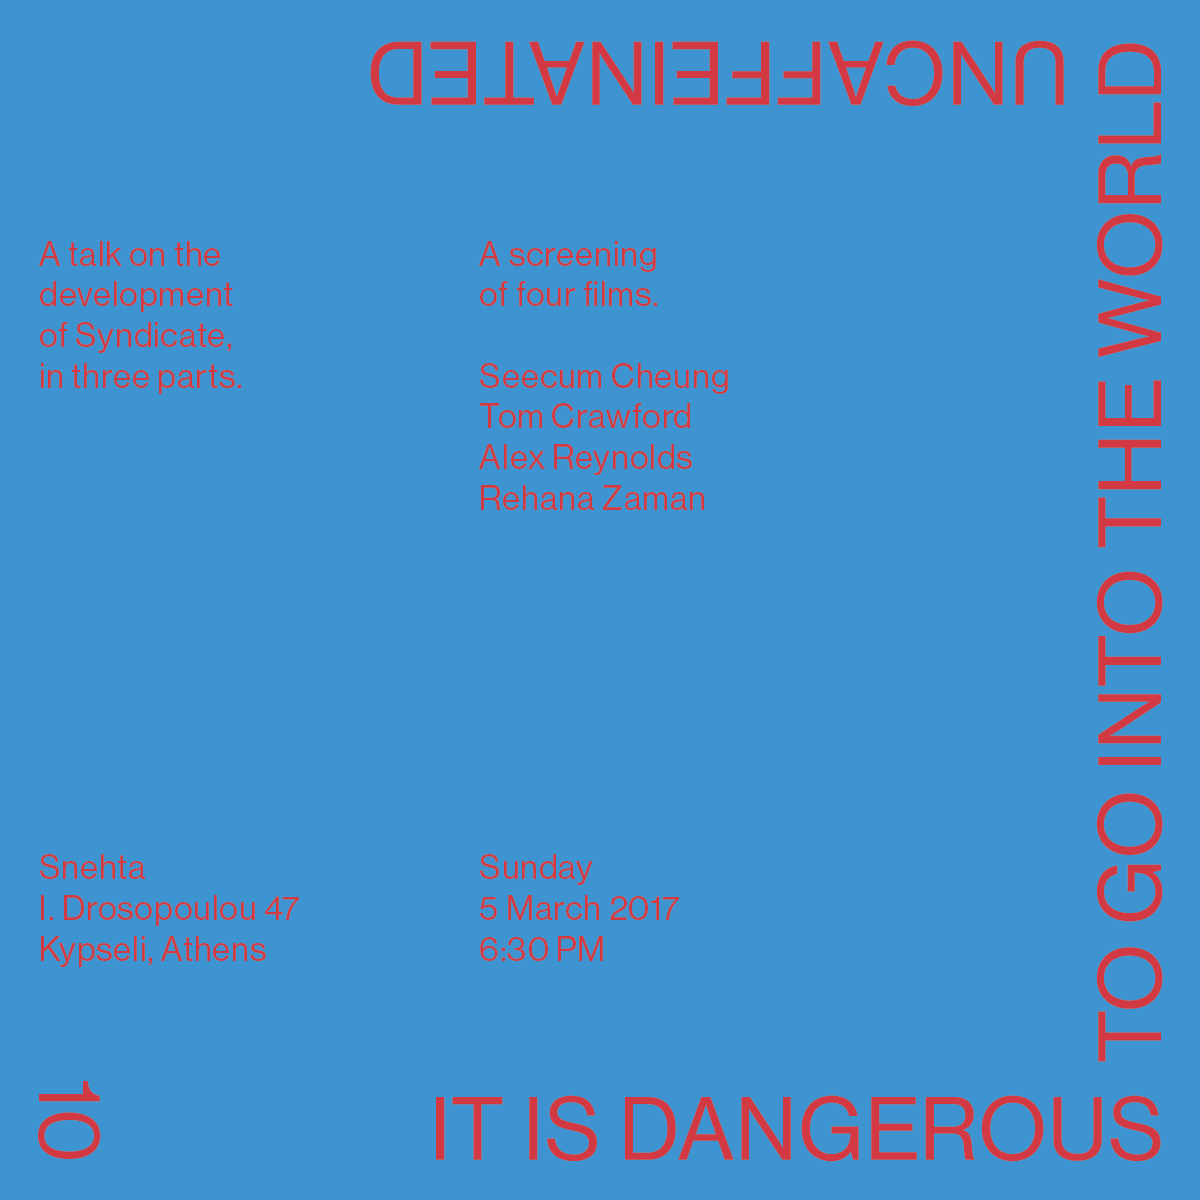 It is dangerous...